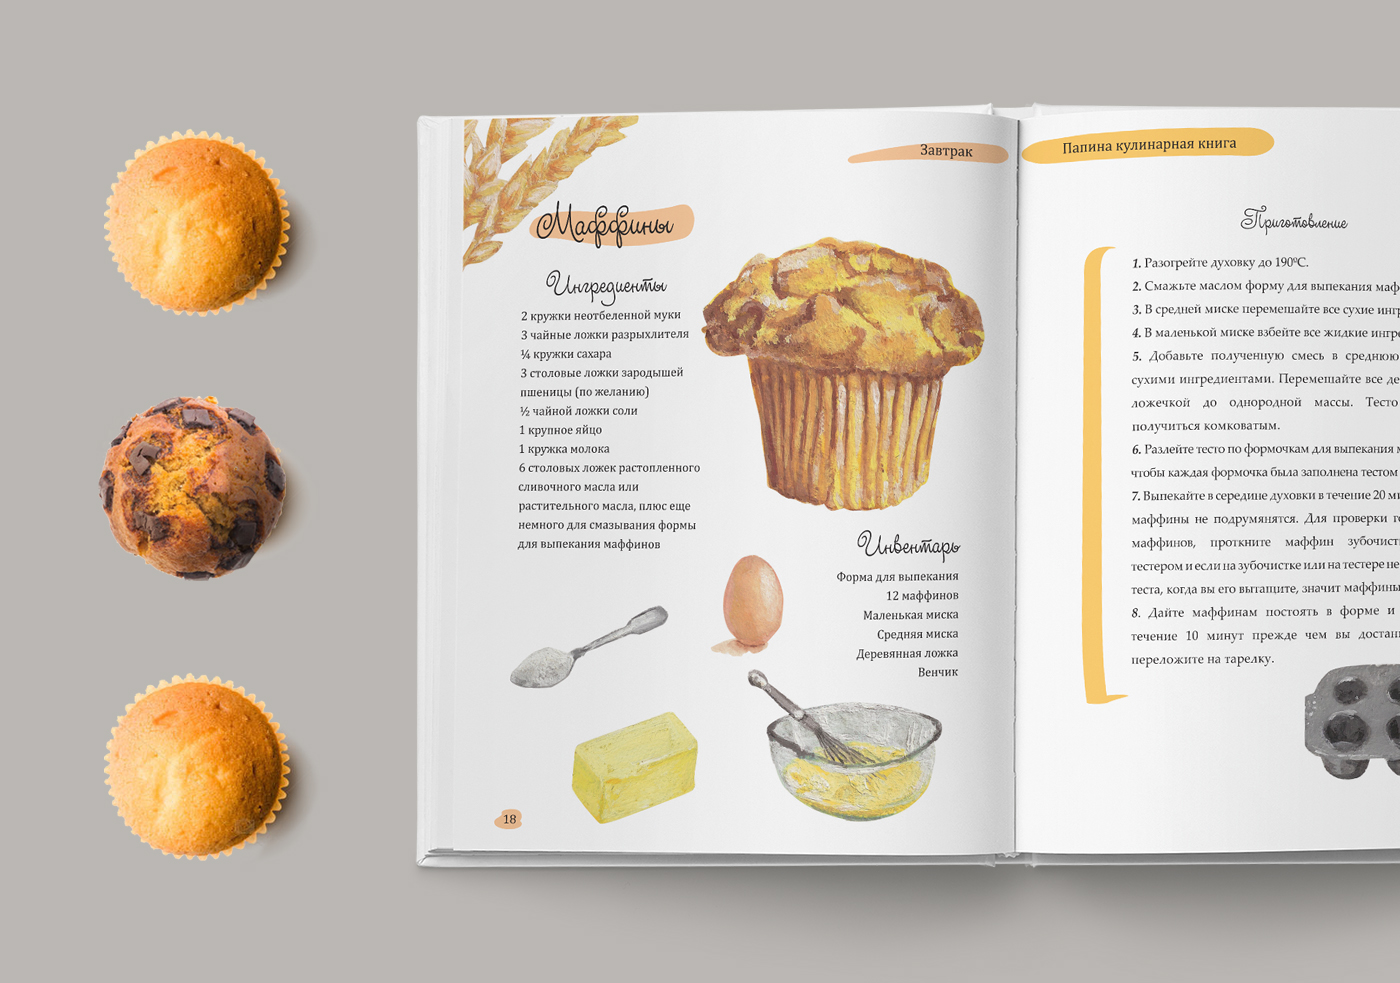 Оформление кулинарной книги Изображения – скачать бесплатно на Freepik